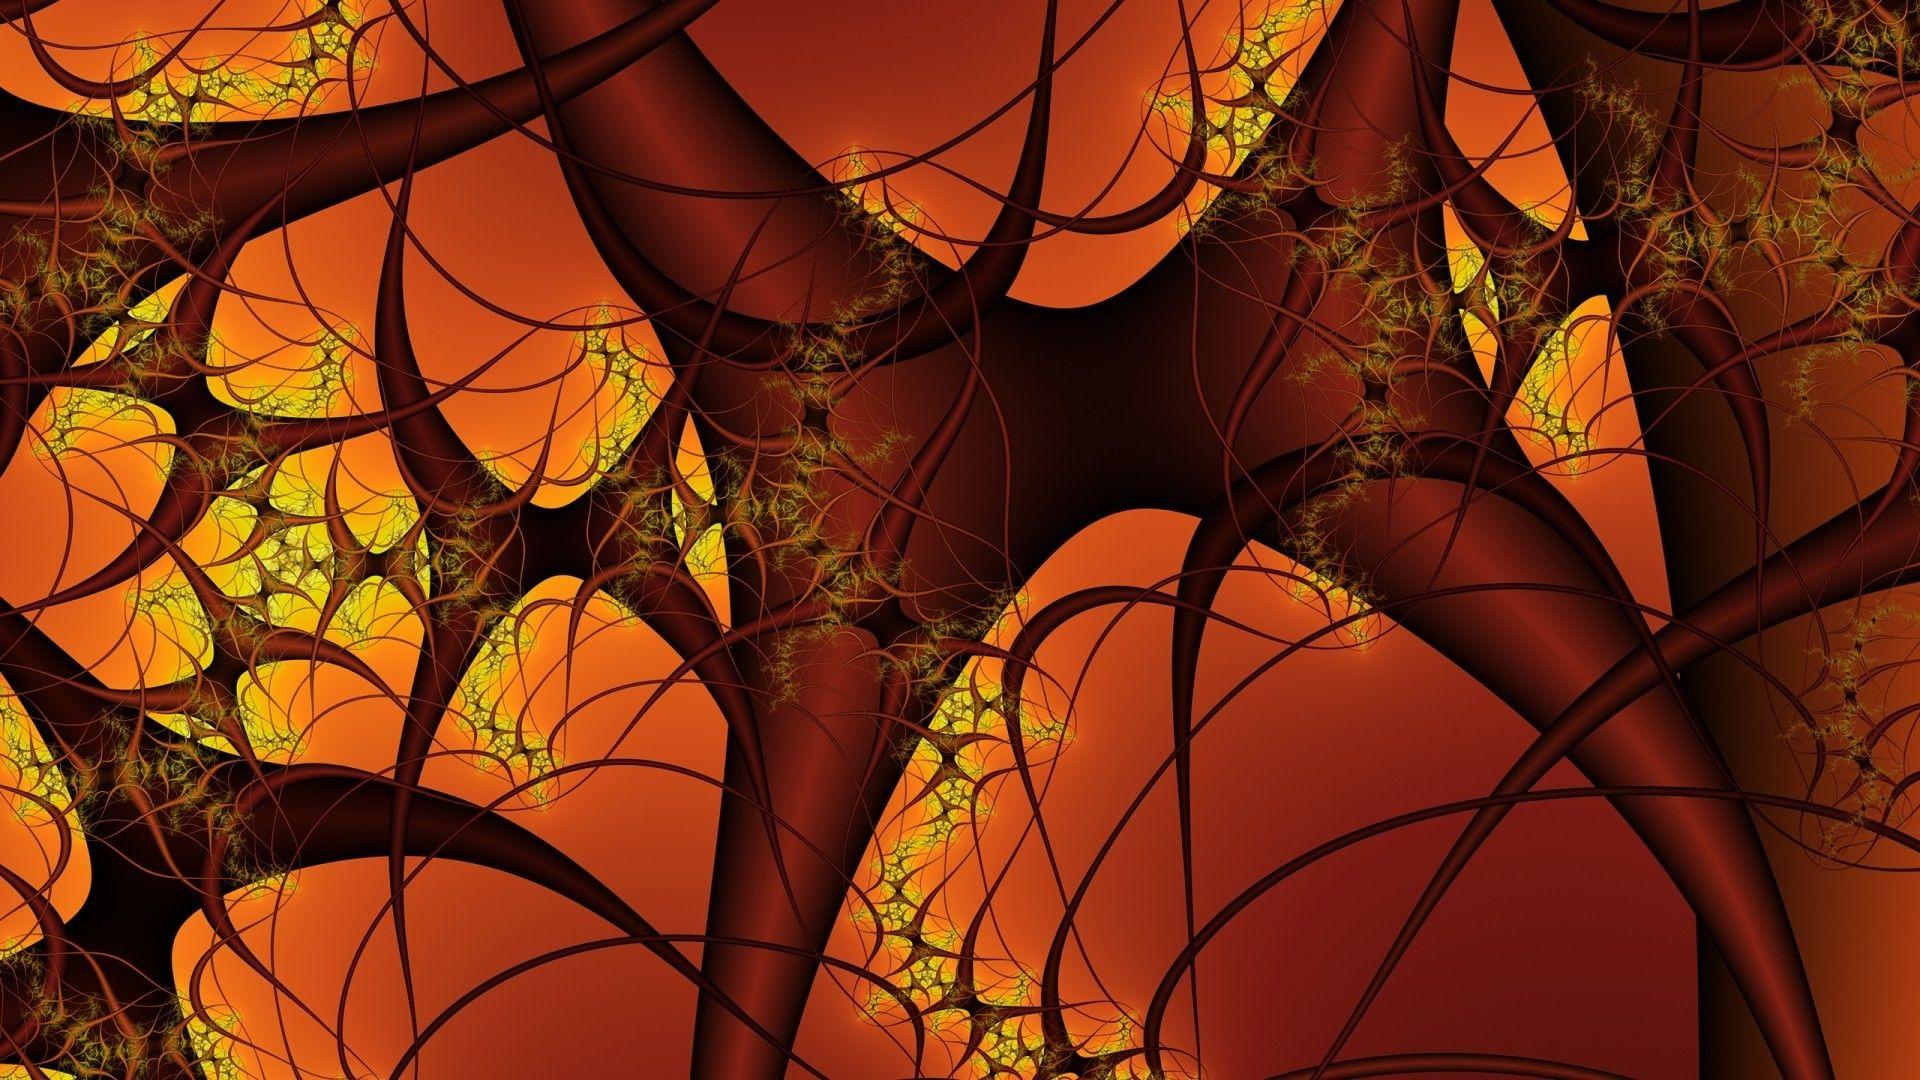 Neurons Wallpaper, 45 Desktop Image of Neurons